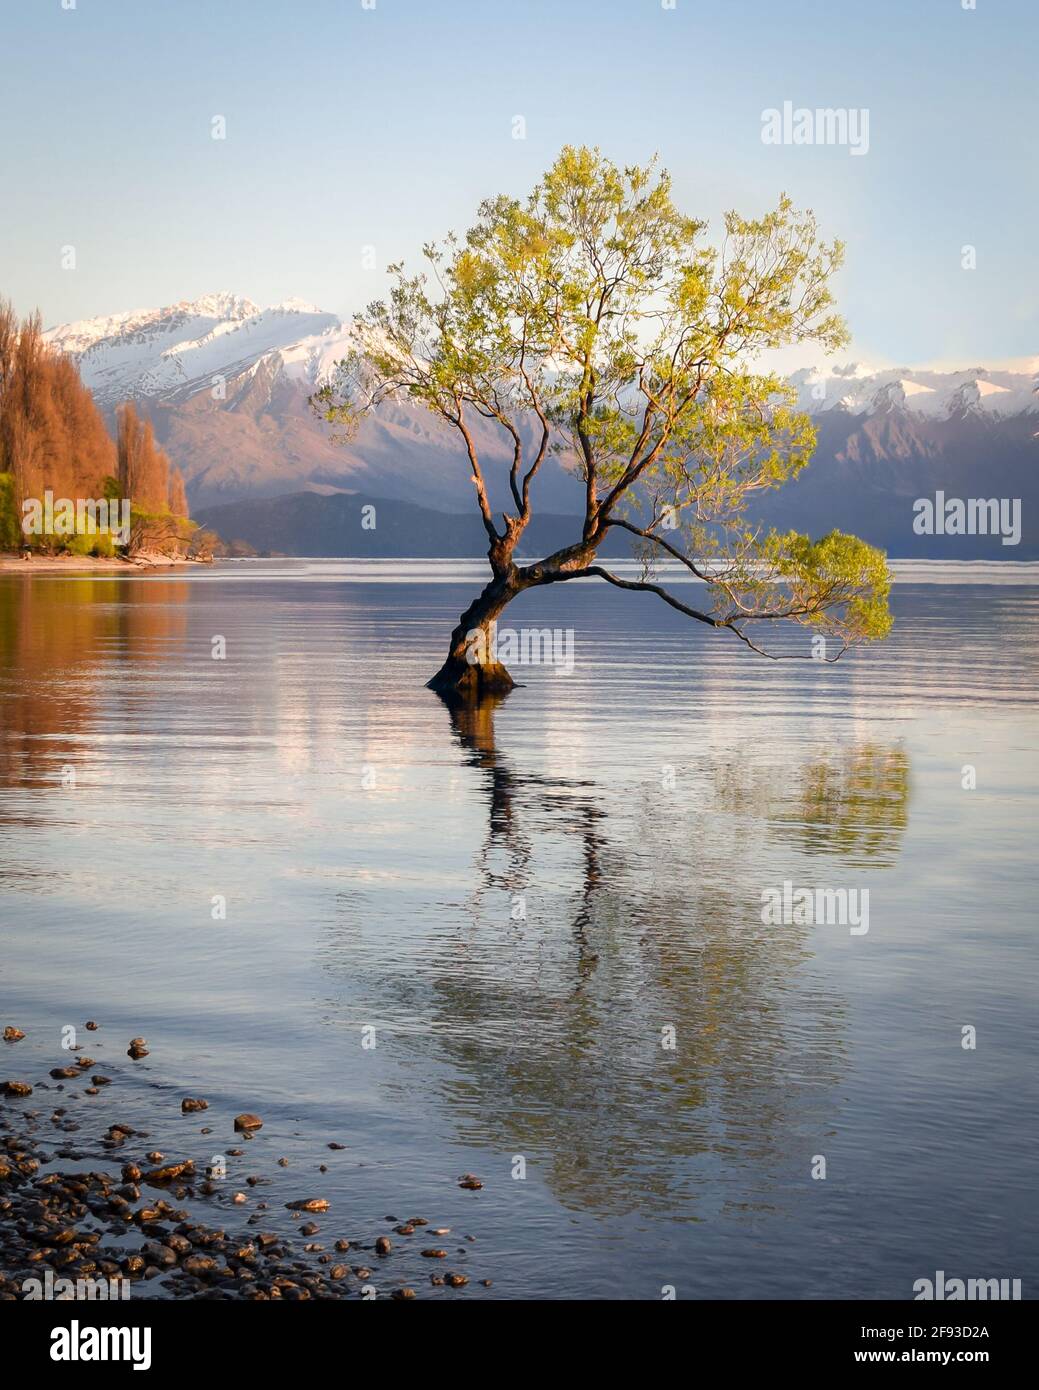 The famous Wanaka Tree Stock Photo - Alamy